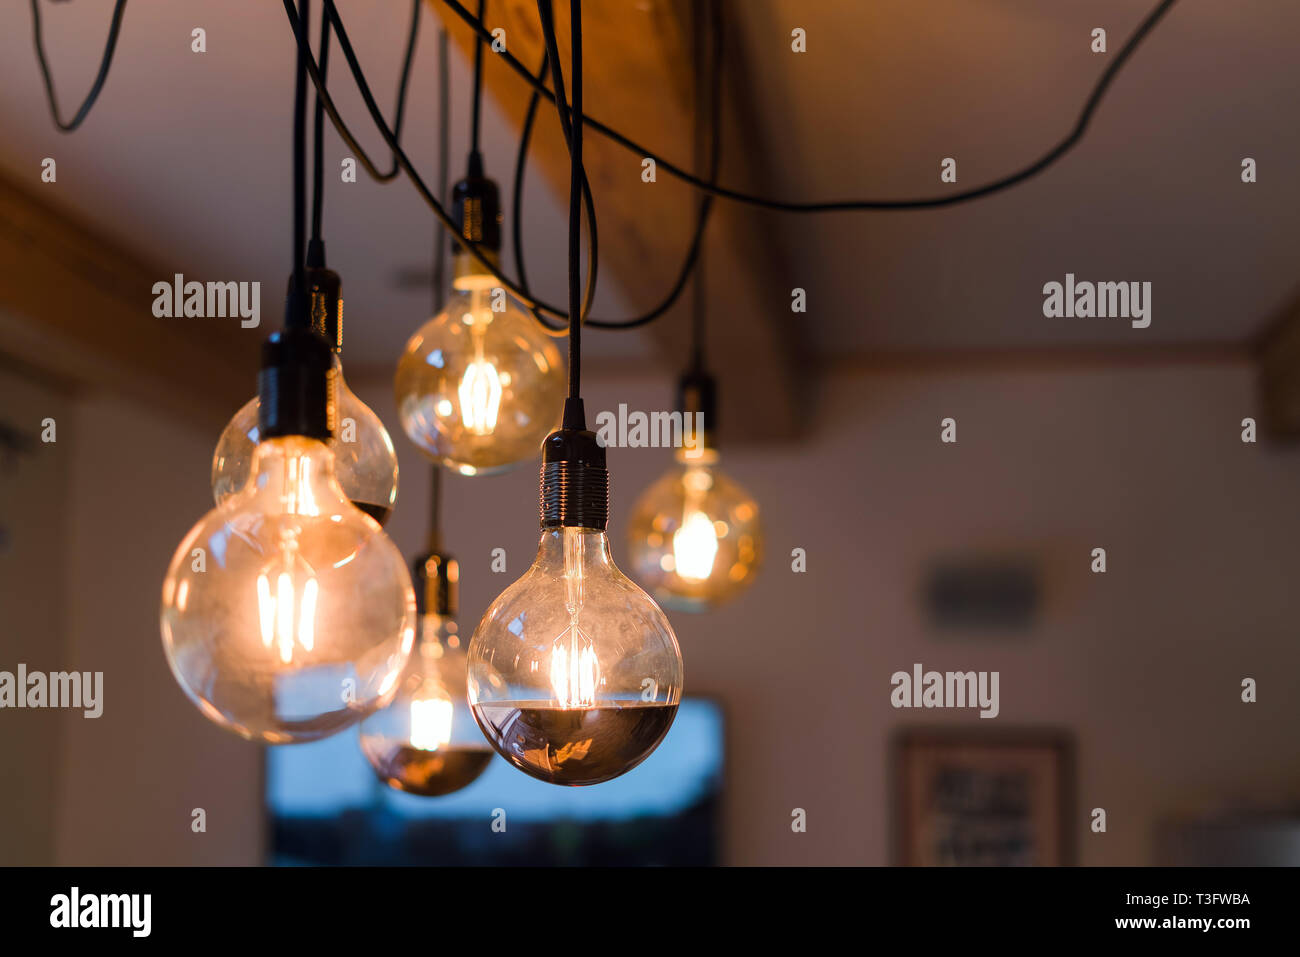 Vue rapprochée de vintage decorative ampoule lampe allumé sur le plafond à  l'intérieur. Lampes transparentes rayonnant de lumière chaude Photo Stock -  Alamy